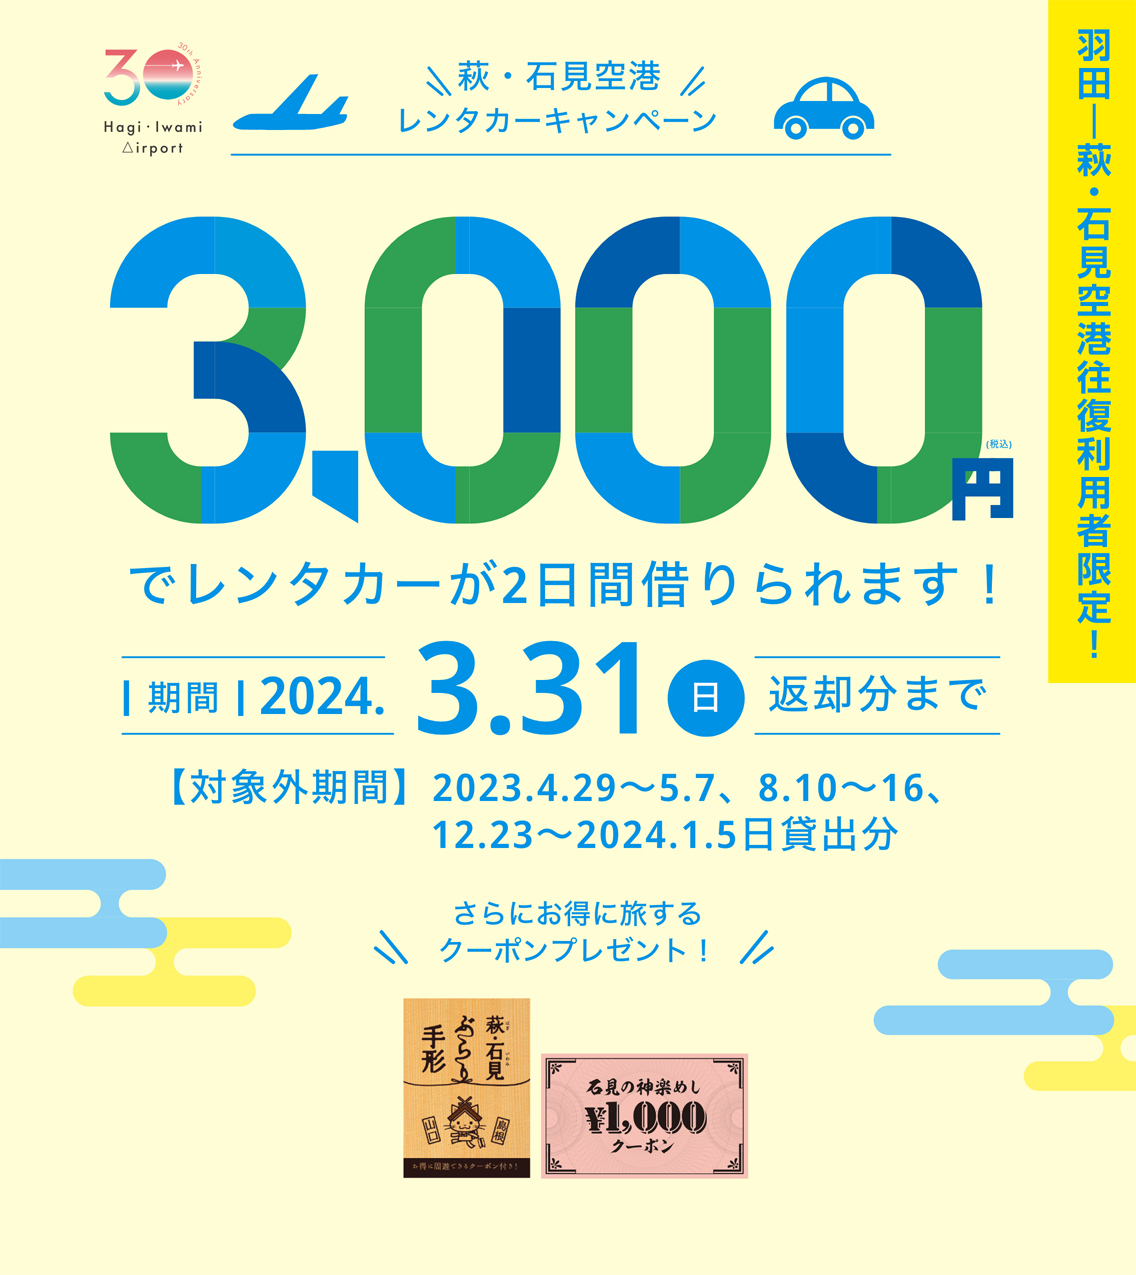 萩・石見空港レンタカーキャンペーン 3,000円でレンタカーが2日間借りられます！